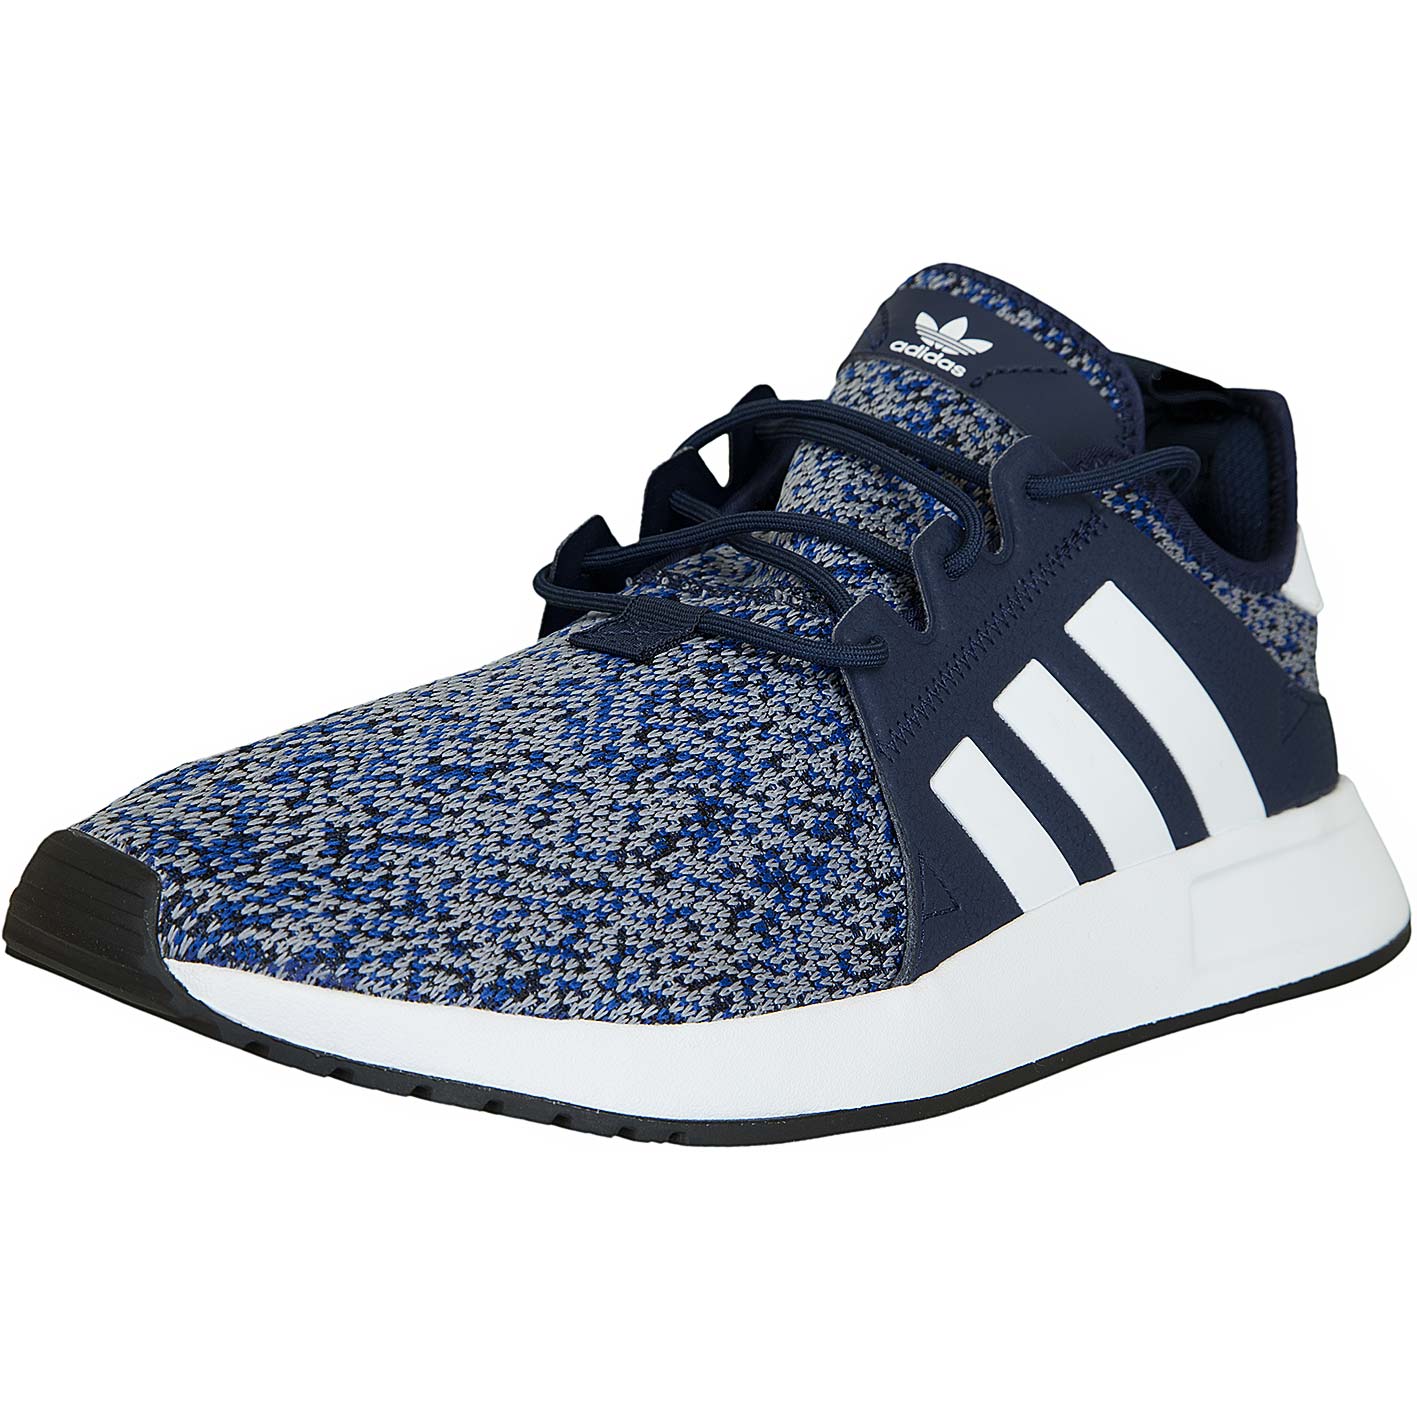 ☆ Adidas Originals Sneaker X PLR dunkelblau/weiß - hier bestellen!